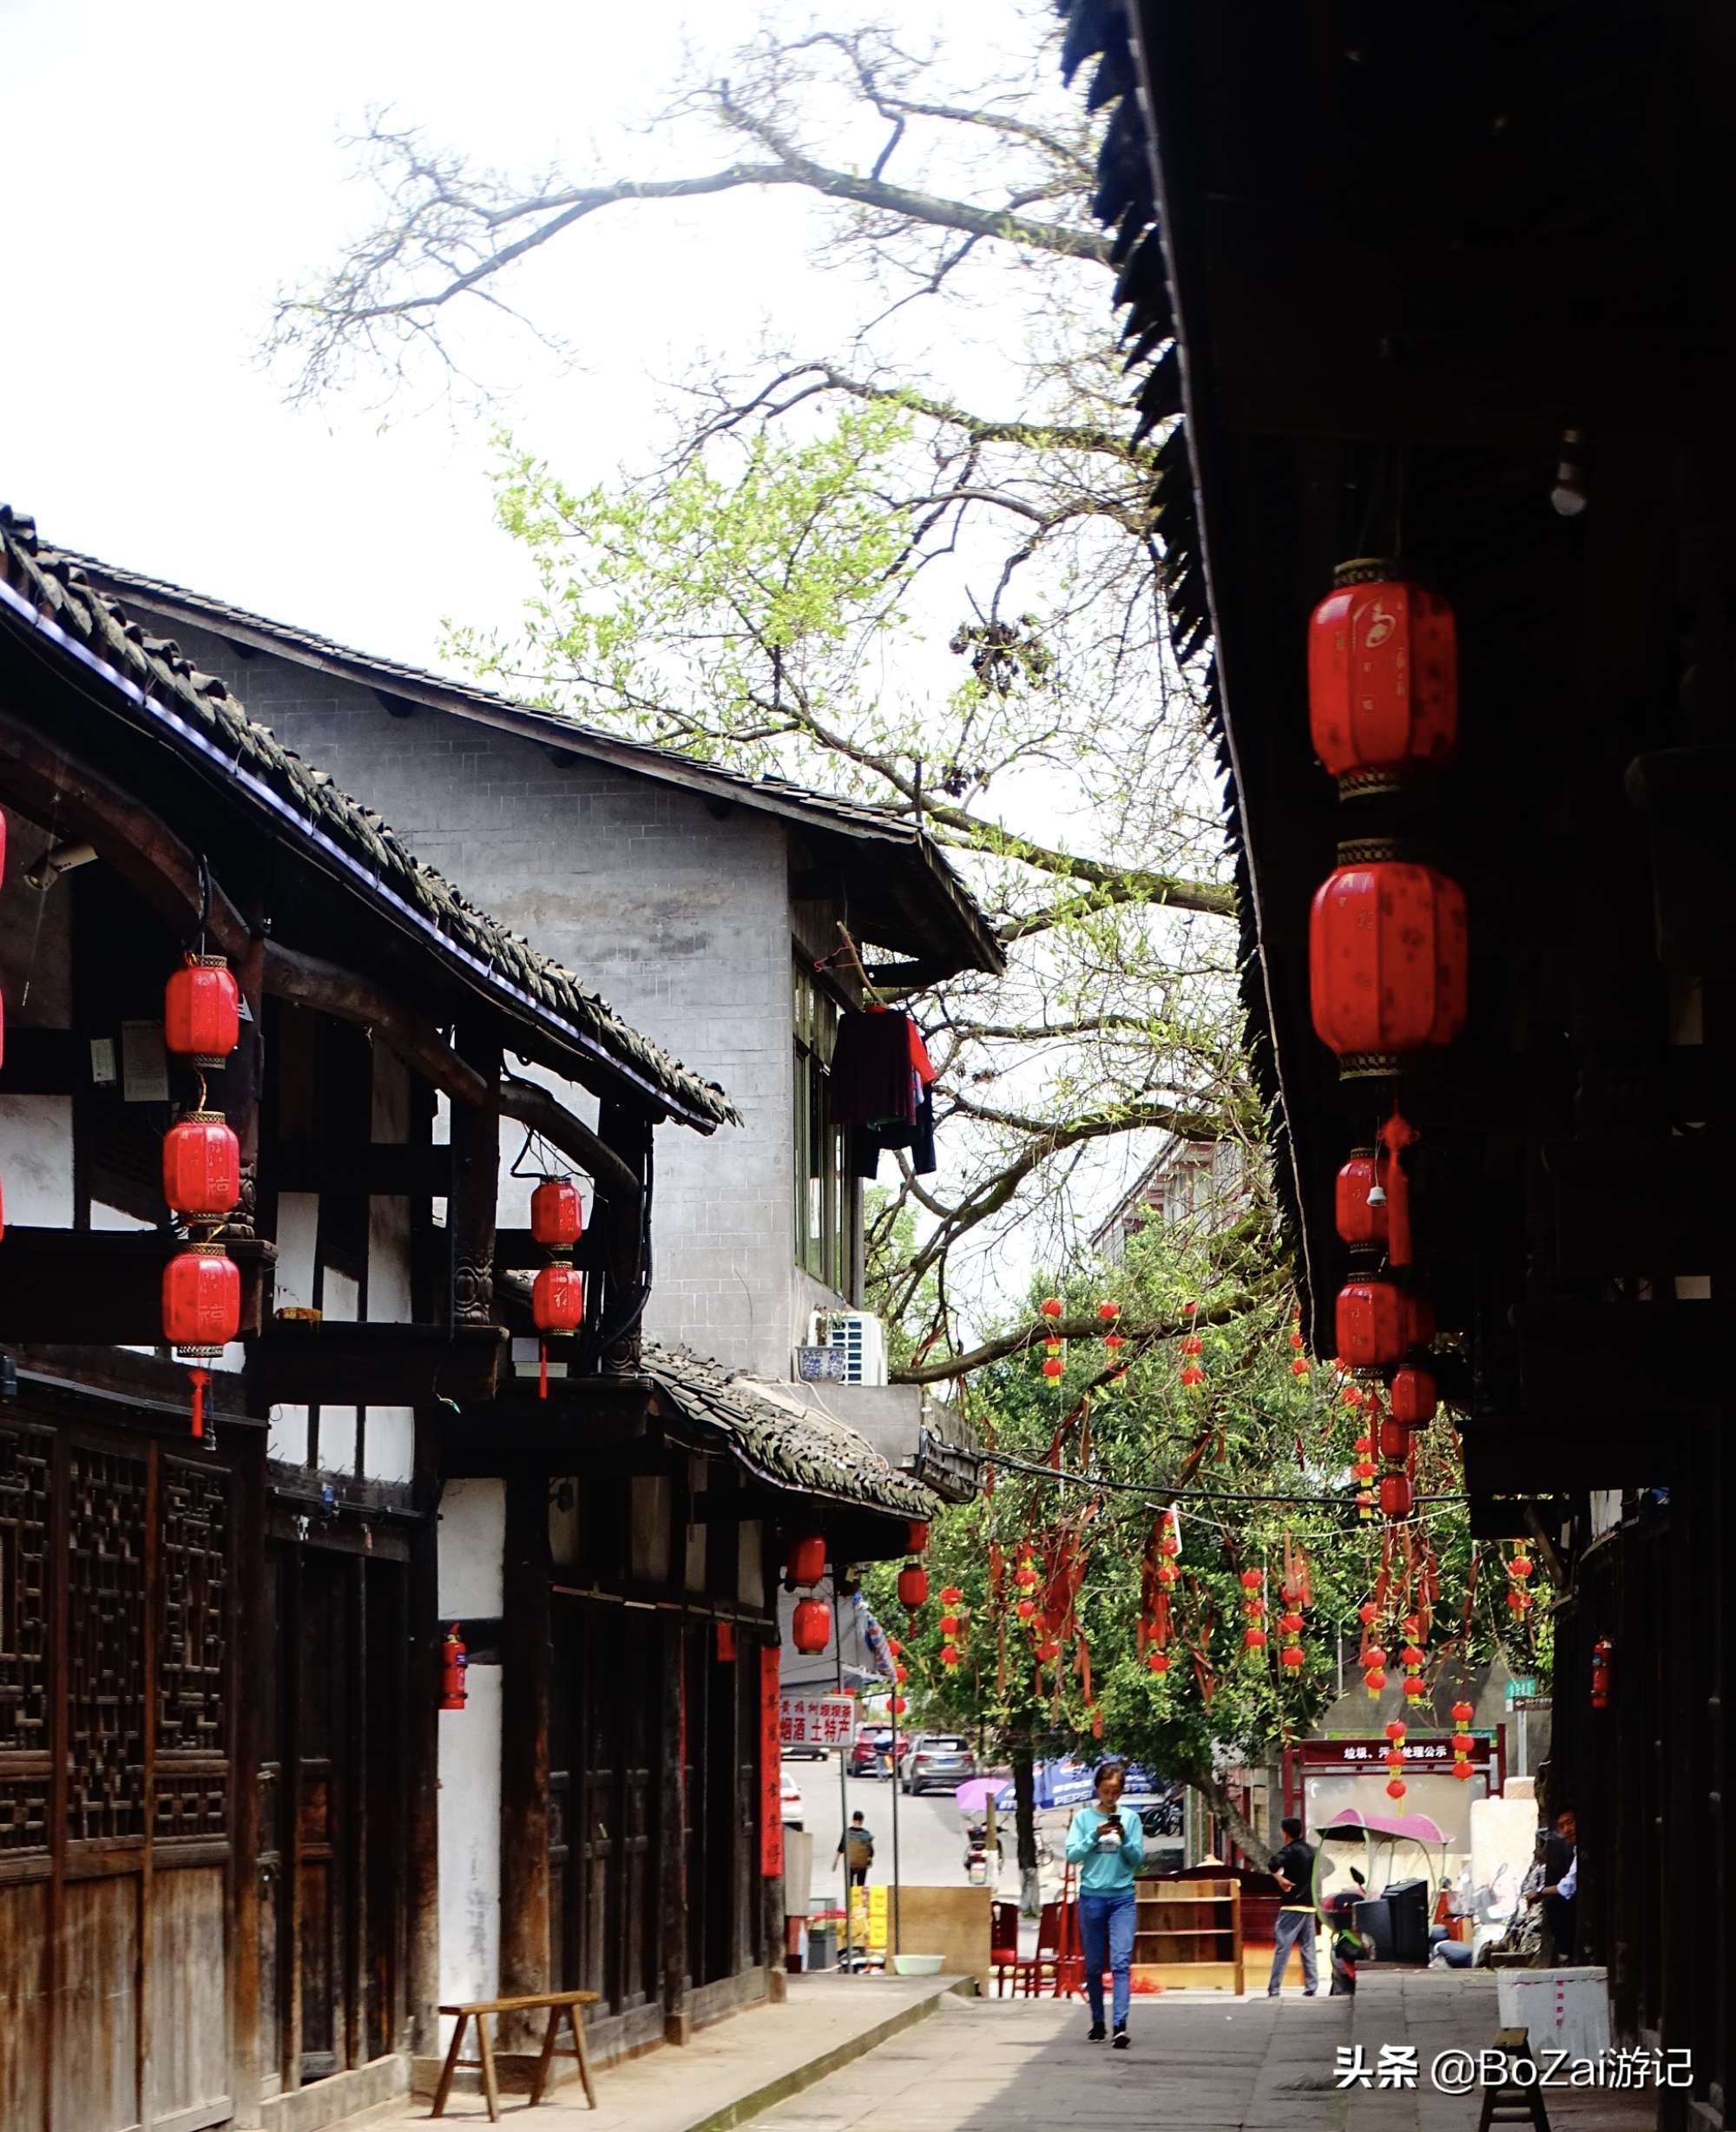 到四川广安市旅游不能错过的12个景点，你去过几个？最爱哪个景点